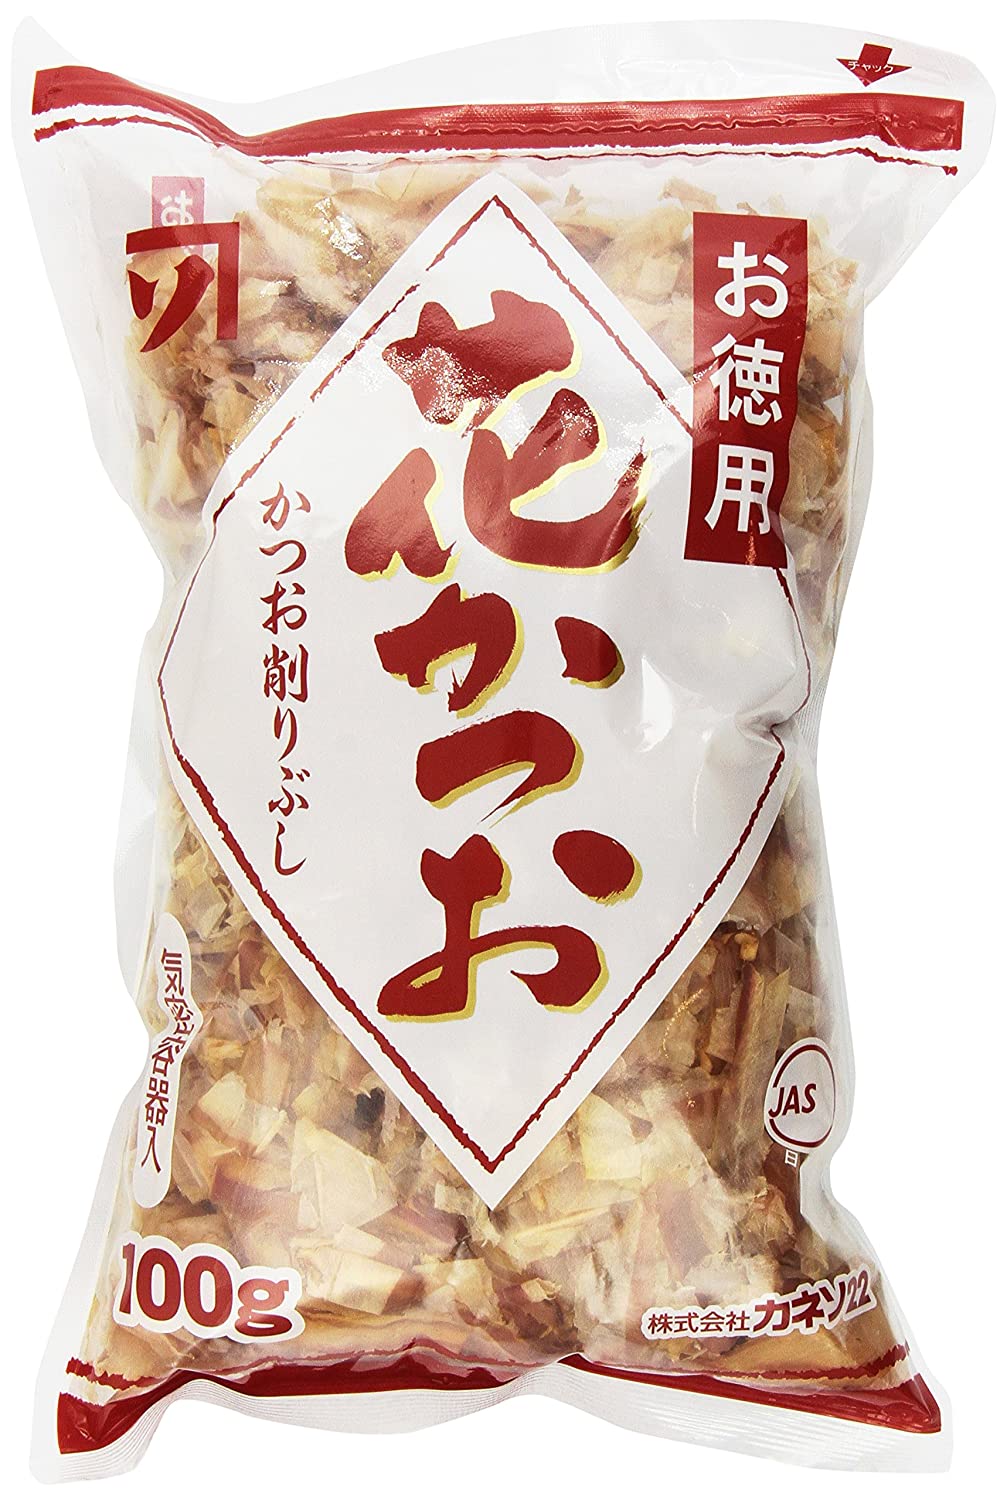 Best takoyaki topping Bonito flakes- Kaneso Tokuyou Hanakatsuo Bonito Flakes